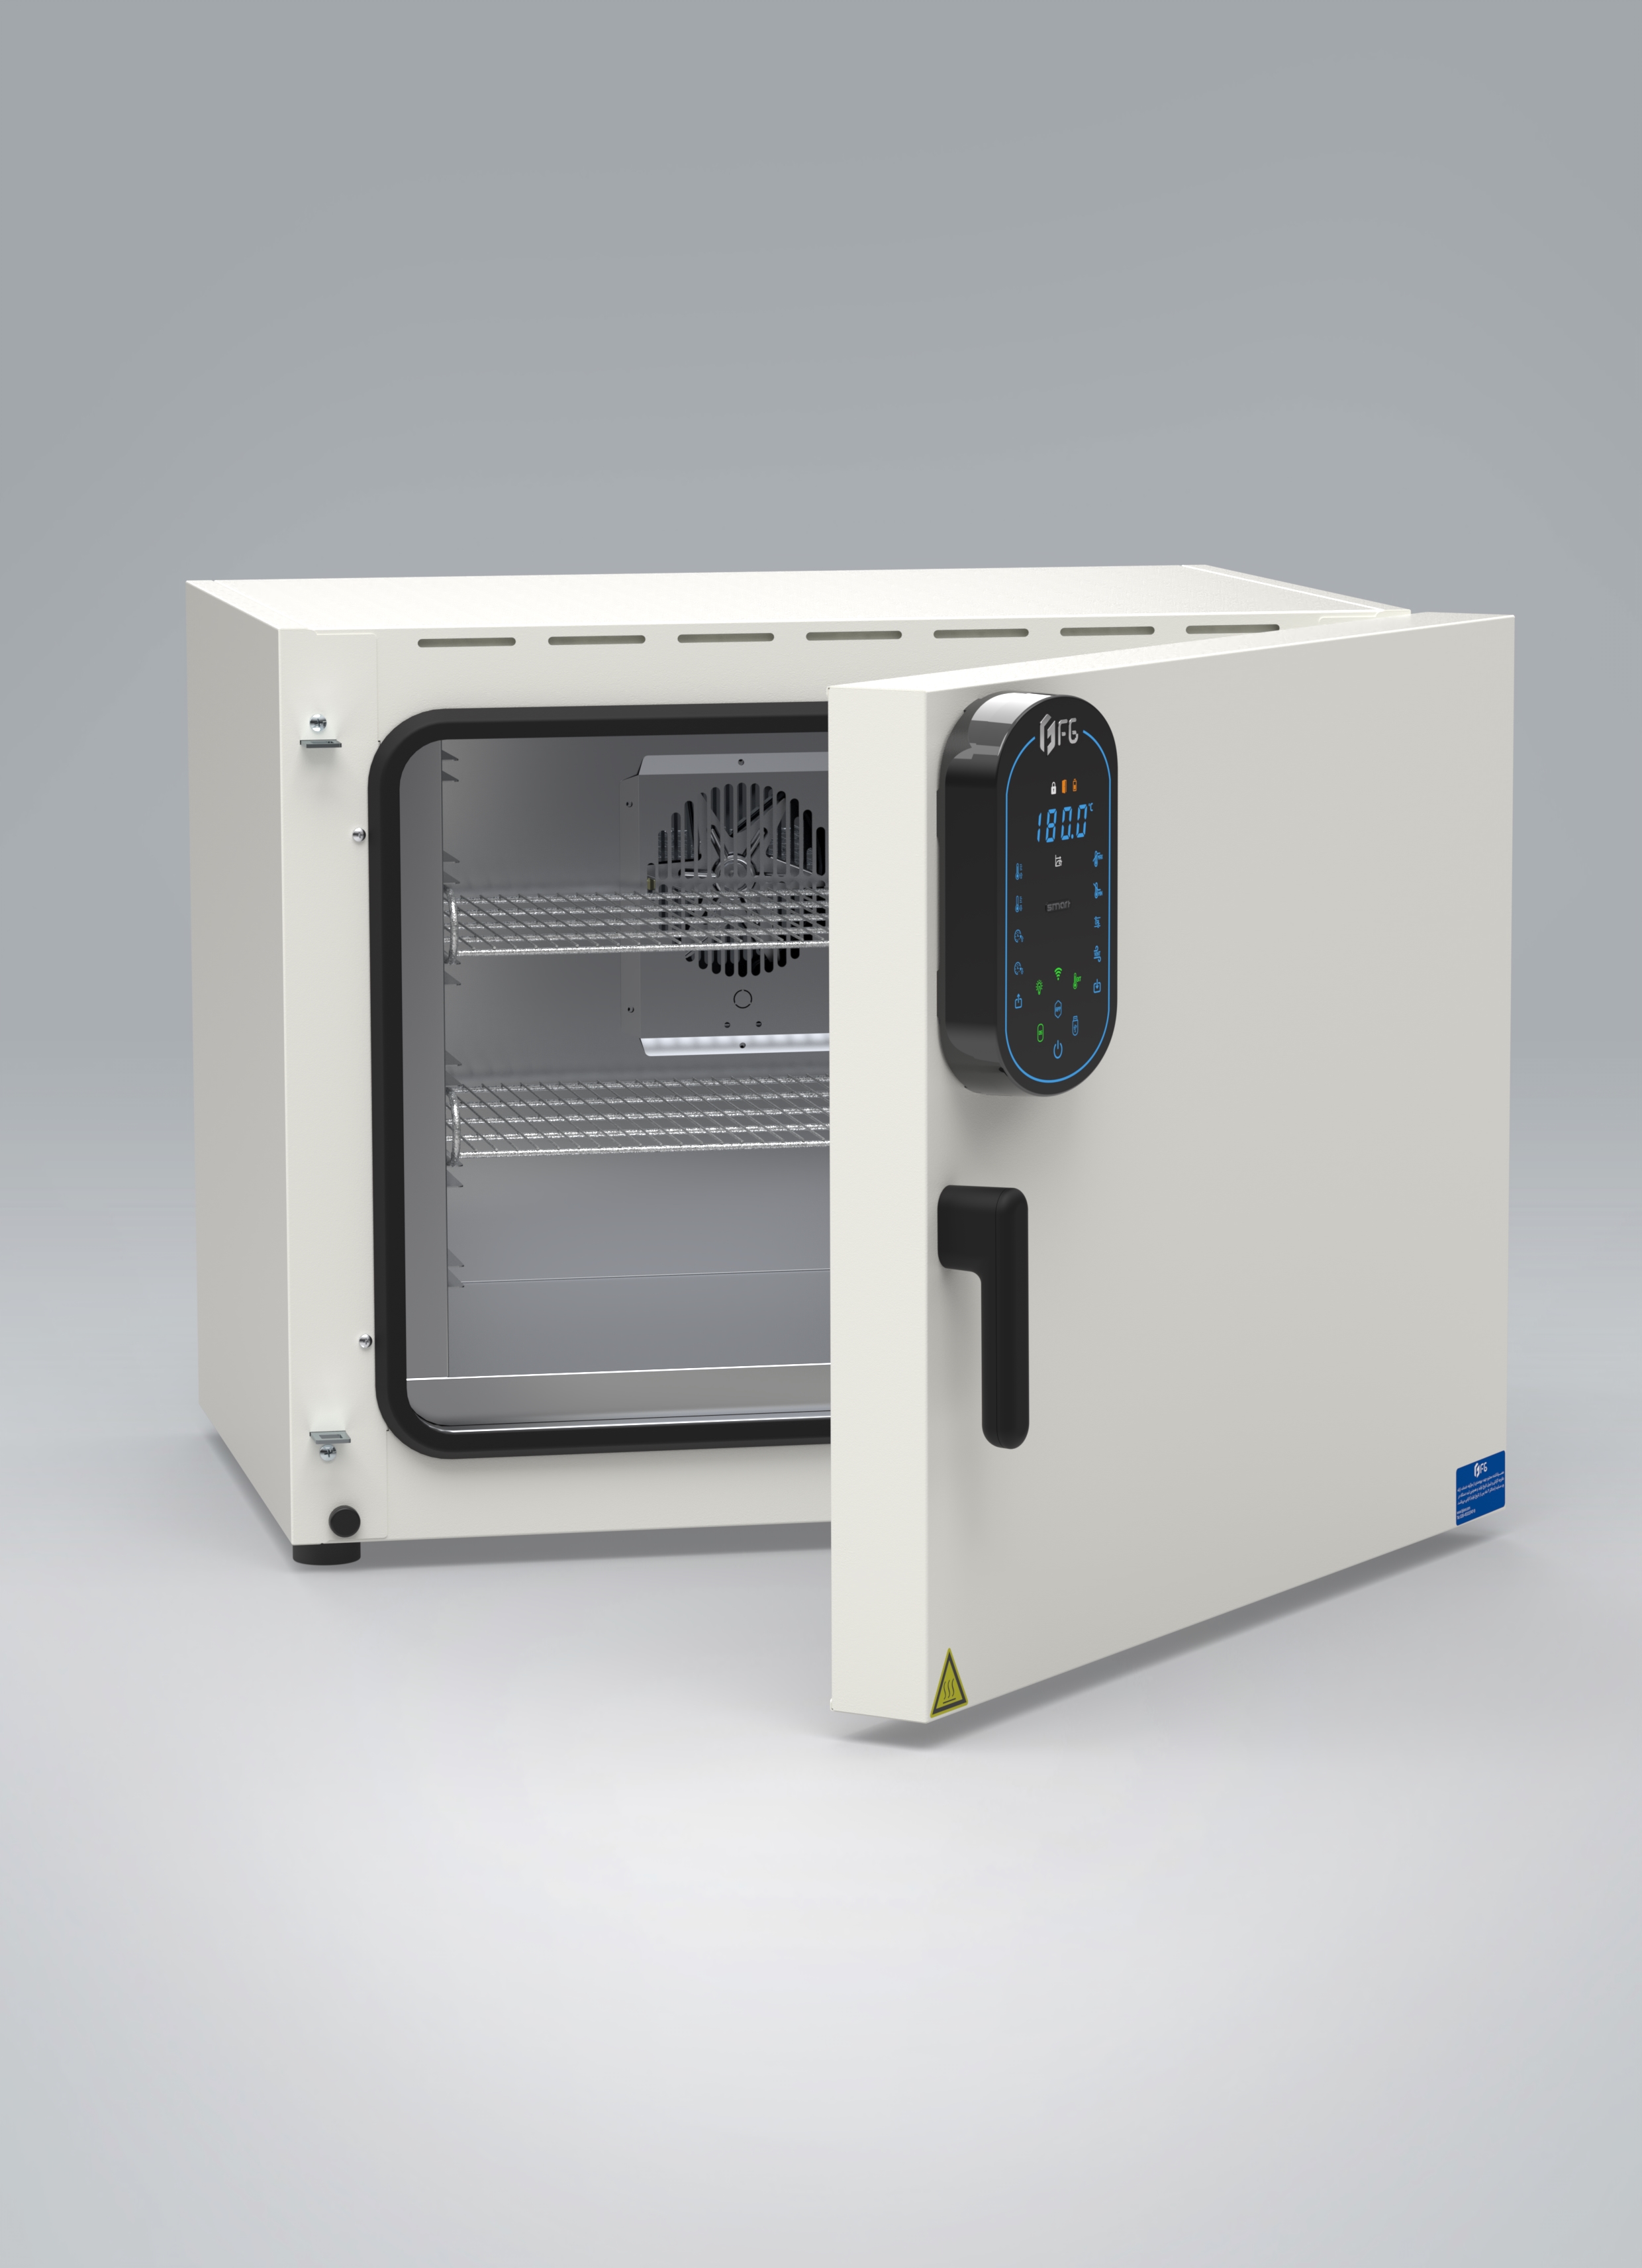 آون آزمایشگاهی هوشمند - Smart Laboratory drying oven - FG - دستگاه - دستگاه ها و ملزومات آزمایشگاهی - فن آزما گستر